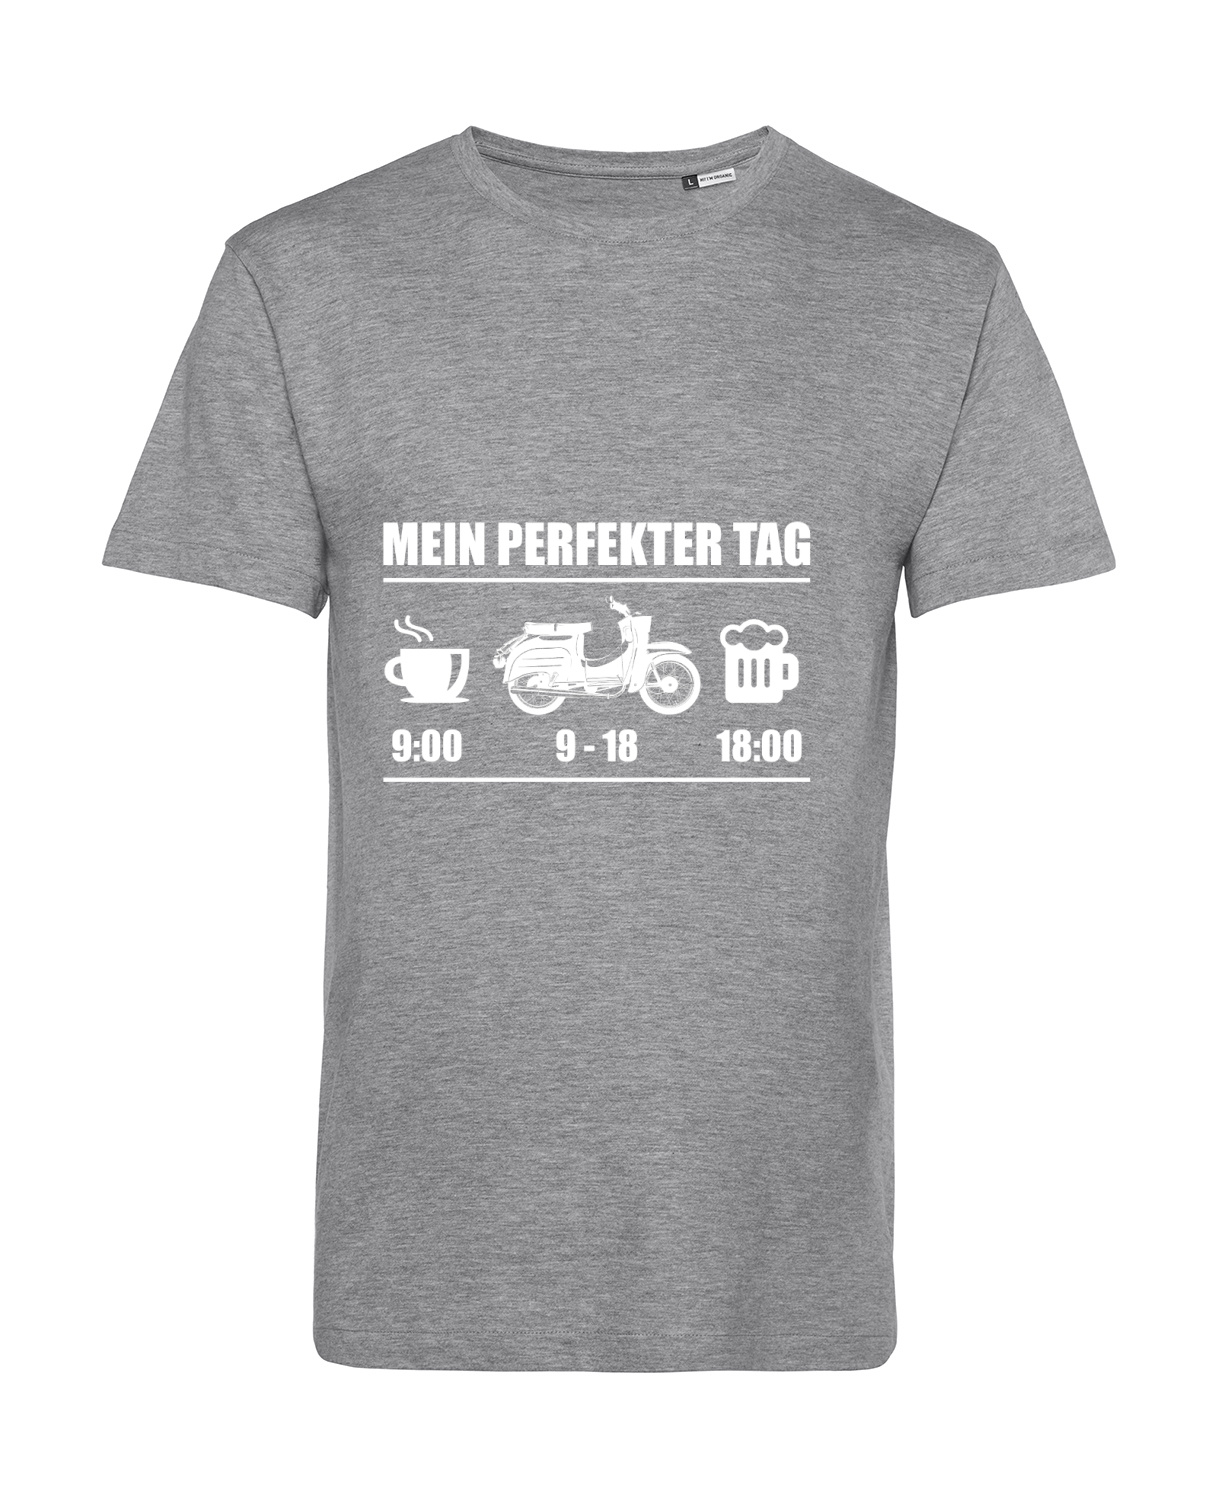 Nachhaltiges T-Shirt Herren 2Takter - Mein perfekter Tag Schwalbe